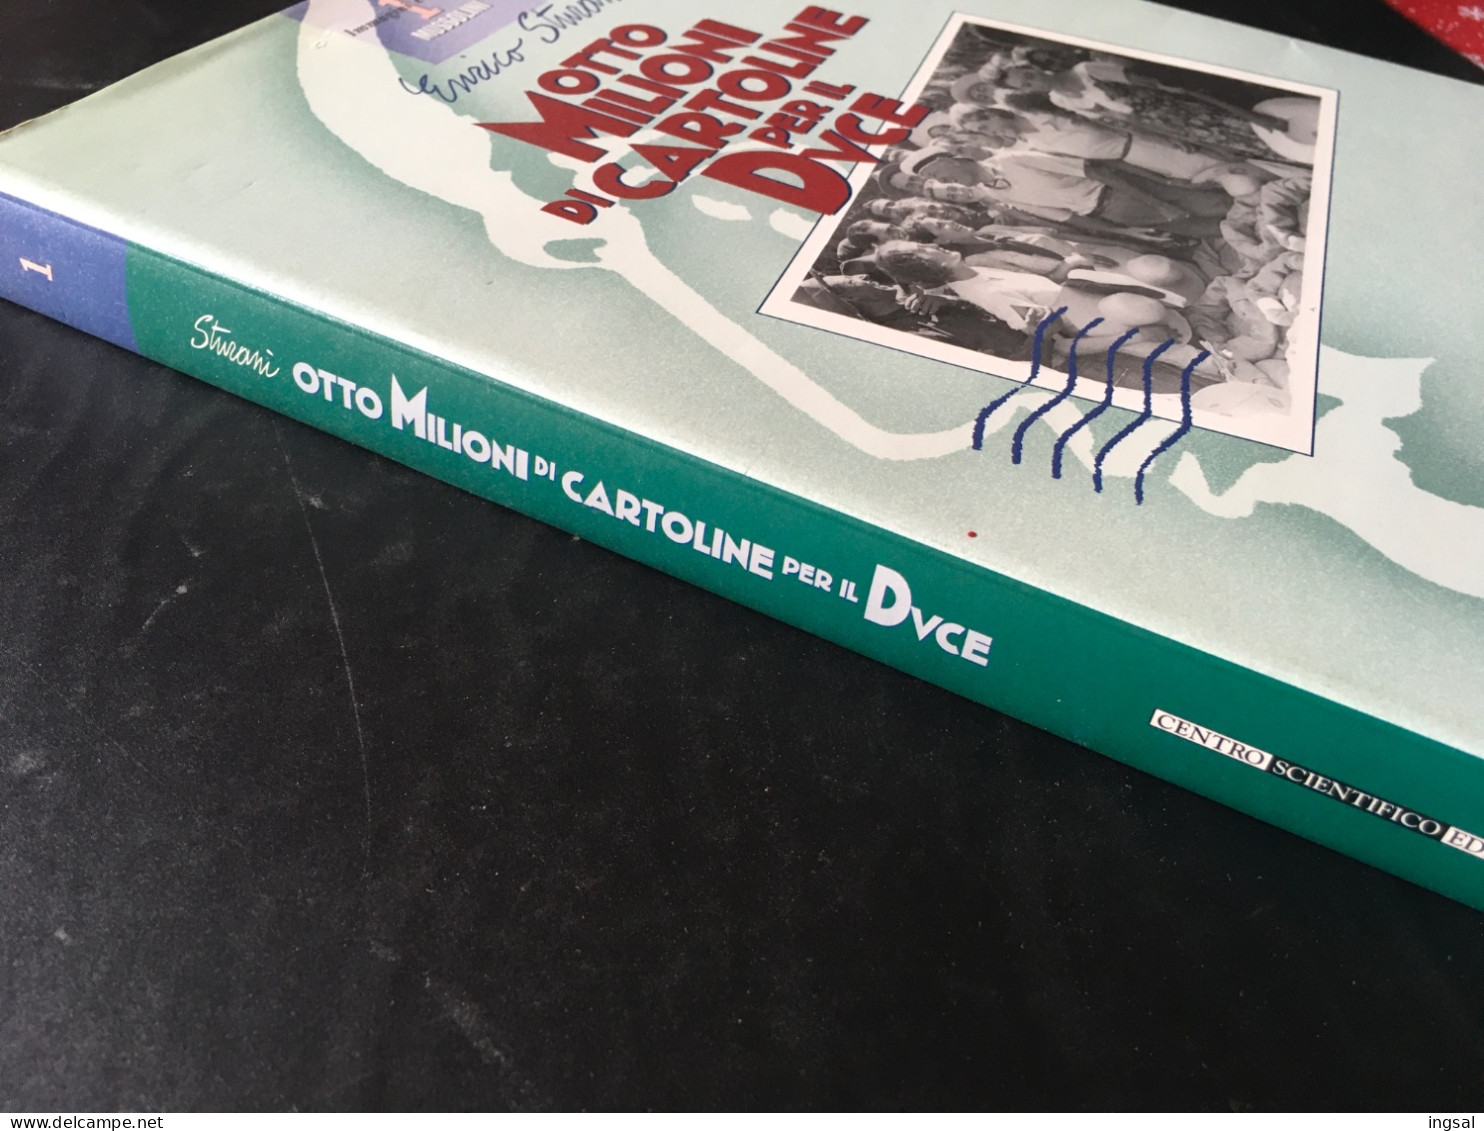 Immagini E Storia Di Mussolini…..Otto Milioni Di Cartoline Per Il Duce ……” Editore…Centro Scientifico......Edizione 1995 - Bibliographie